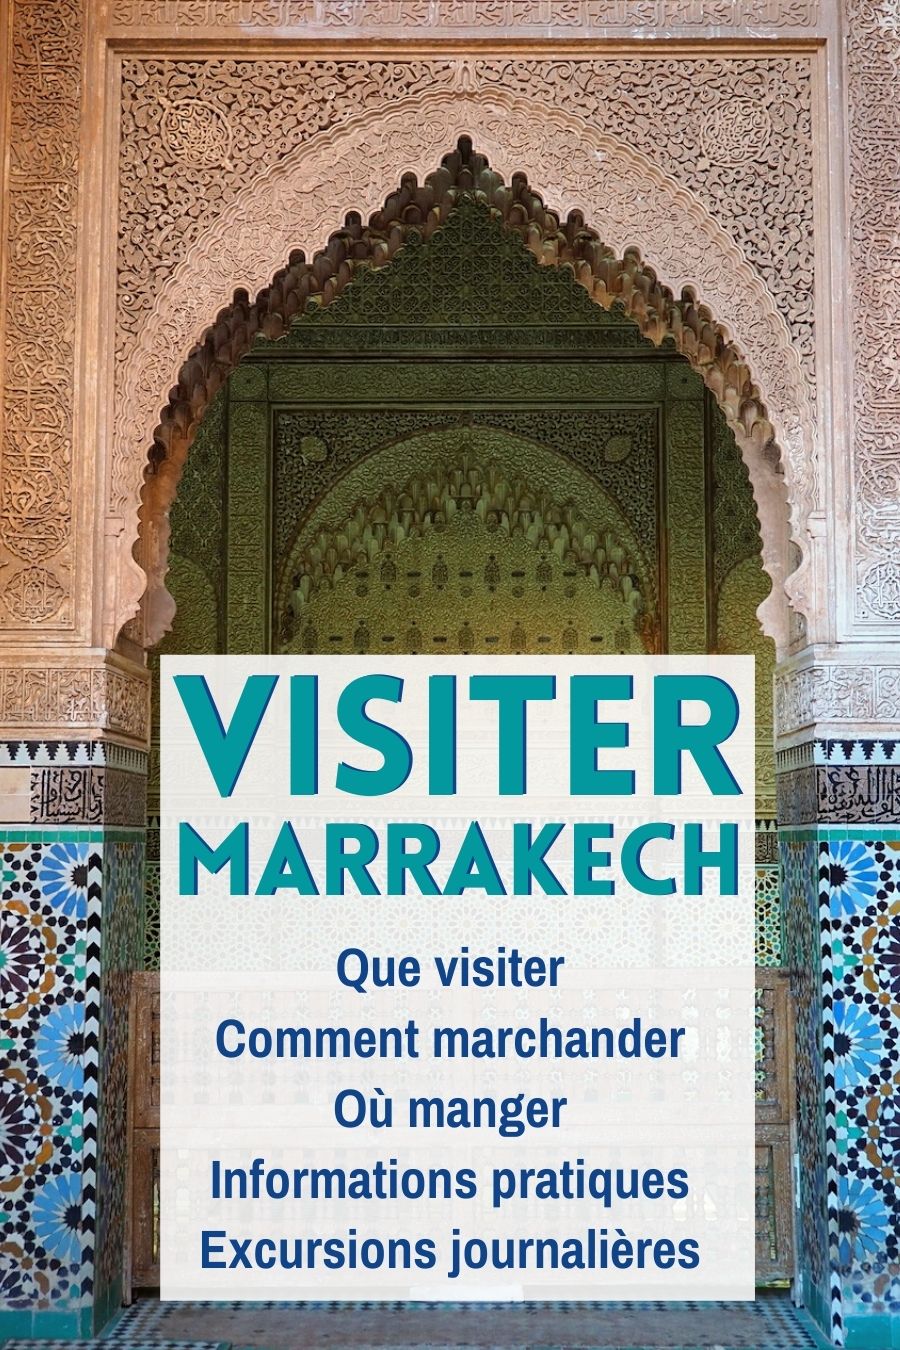 Voyage à Marrakech: lieux incountournables à visiter, bonnes adresses, informations pratiques et idées d'excursions journalières